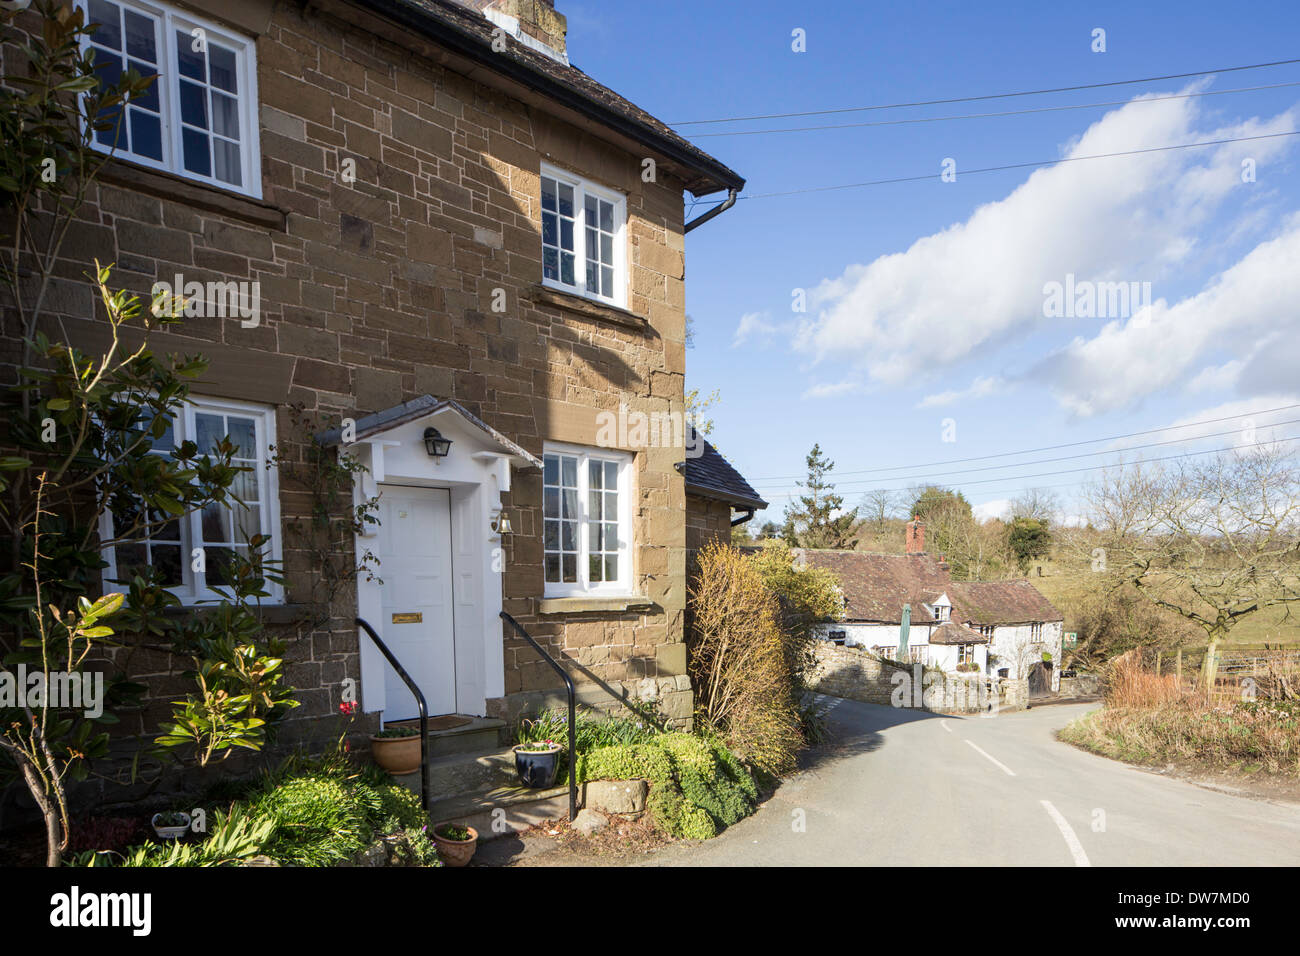 Village cottage, Cardington, Shropshire, England, UK Stock Photo